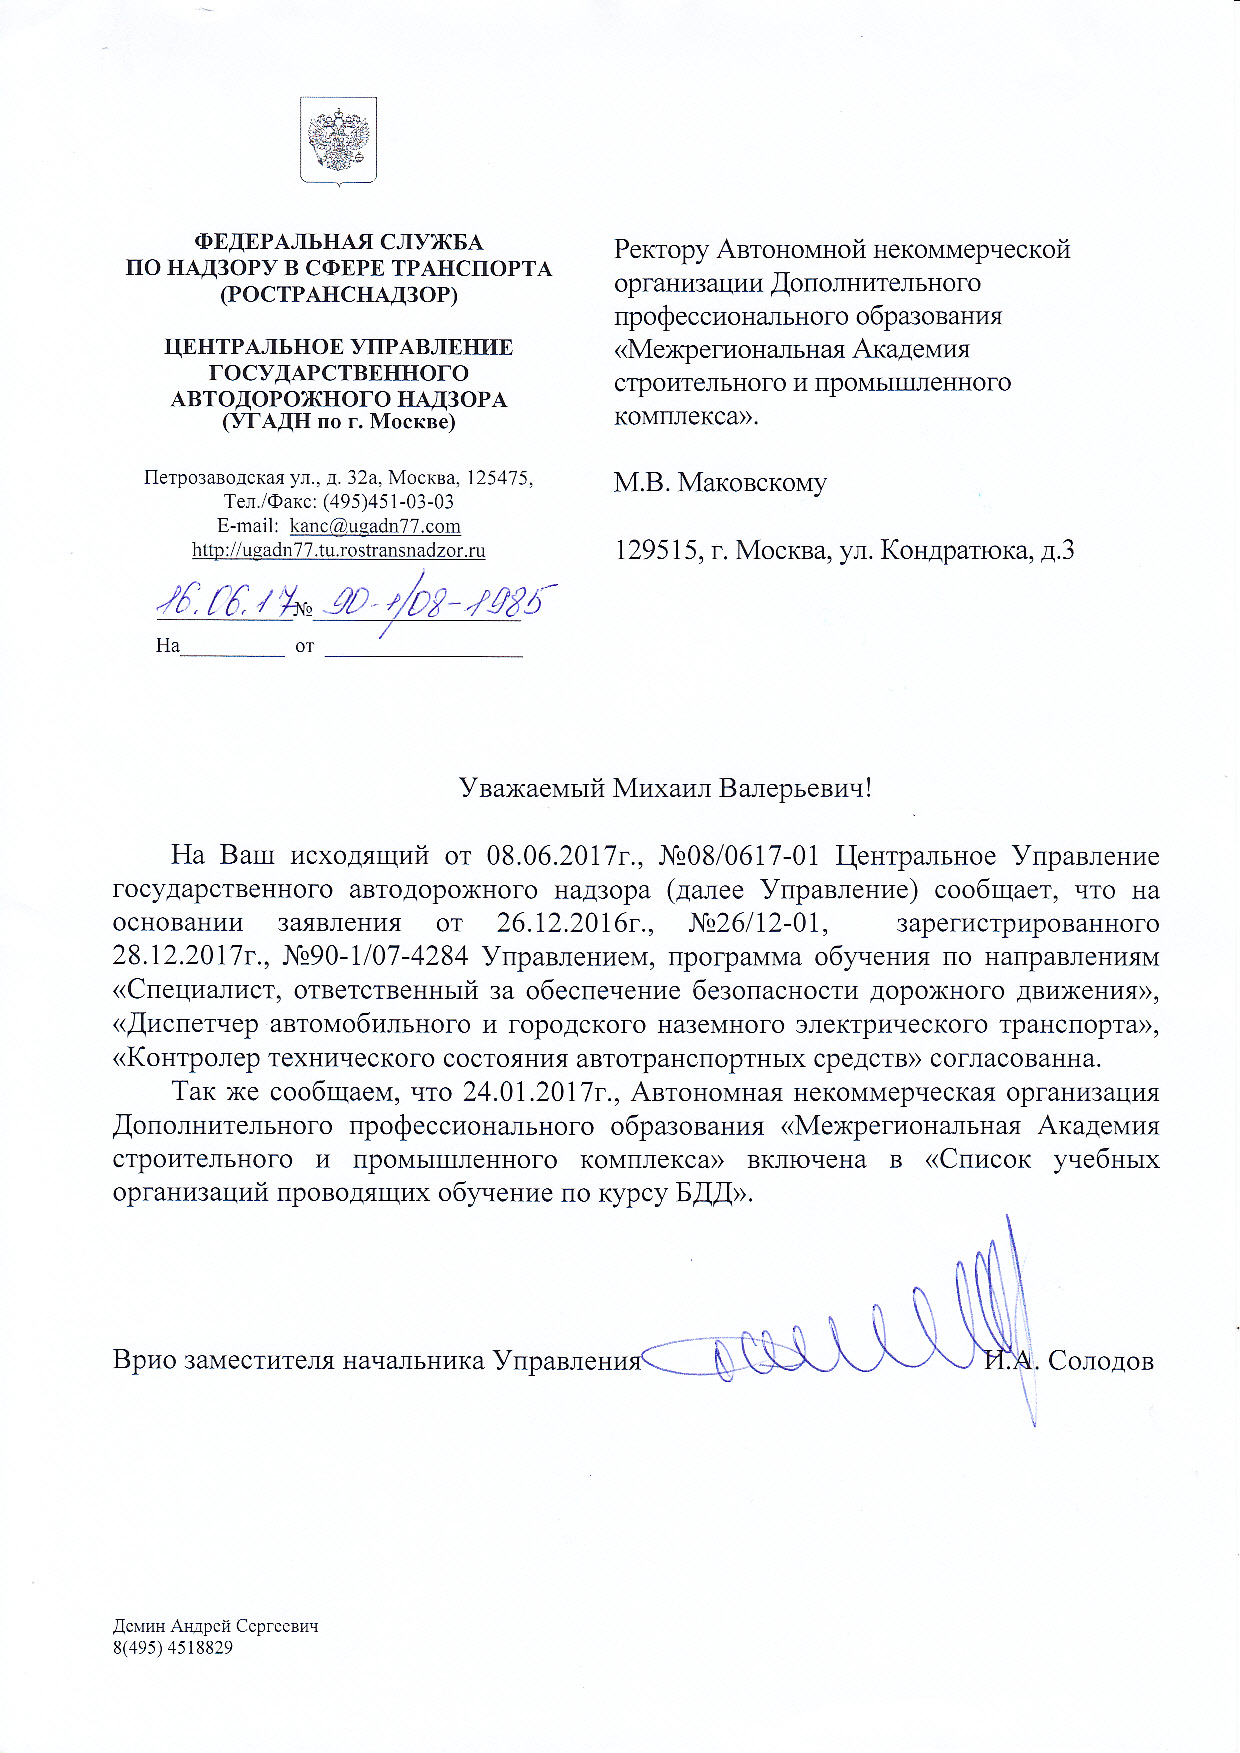 МАСПК внесена в реестр учебных заведений Москвы по подготовке специалистов по автомобильным перевозкам и безопасности дорожного движения 